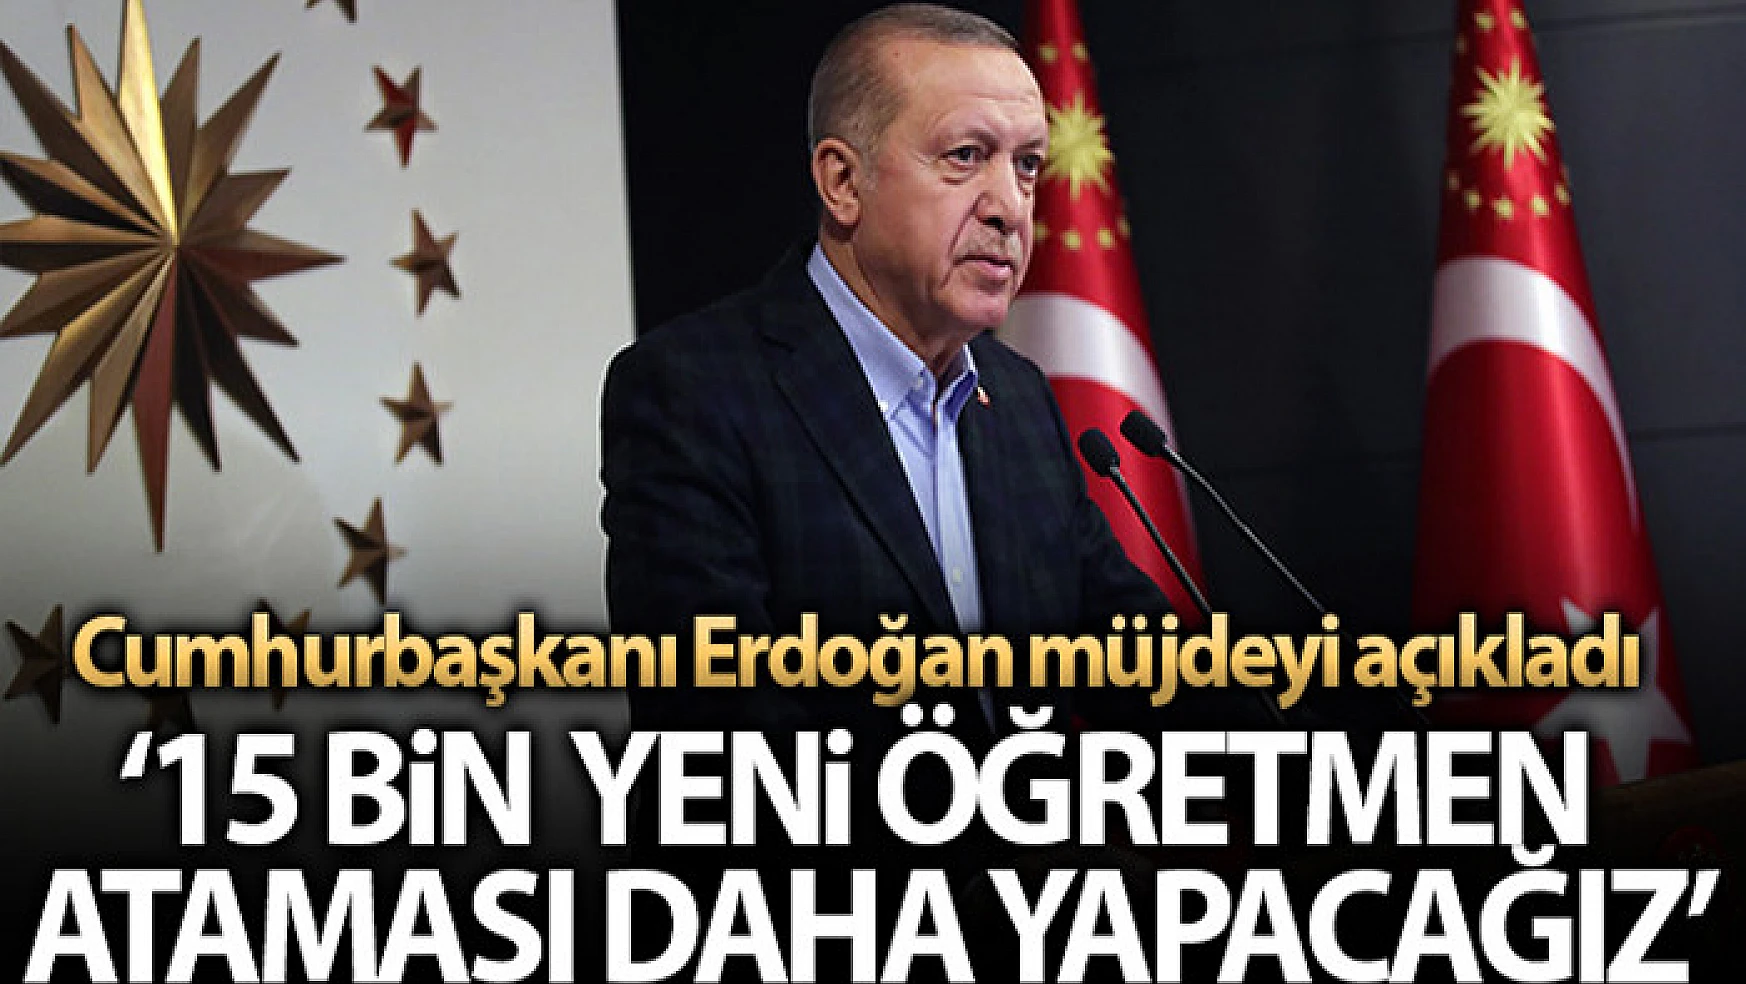 Cumhurbaşkanı Erdoğan: '15 bin yeni öğretmen ataması daha yapacağız'